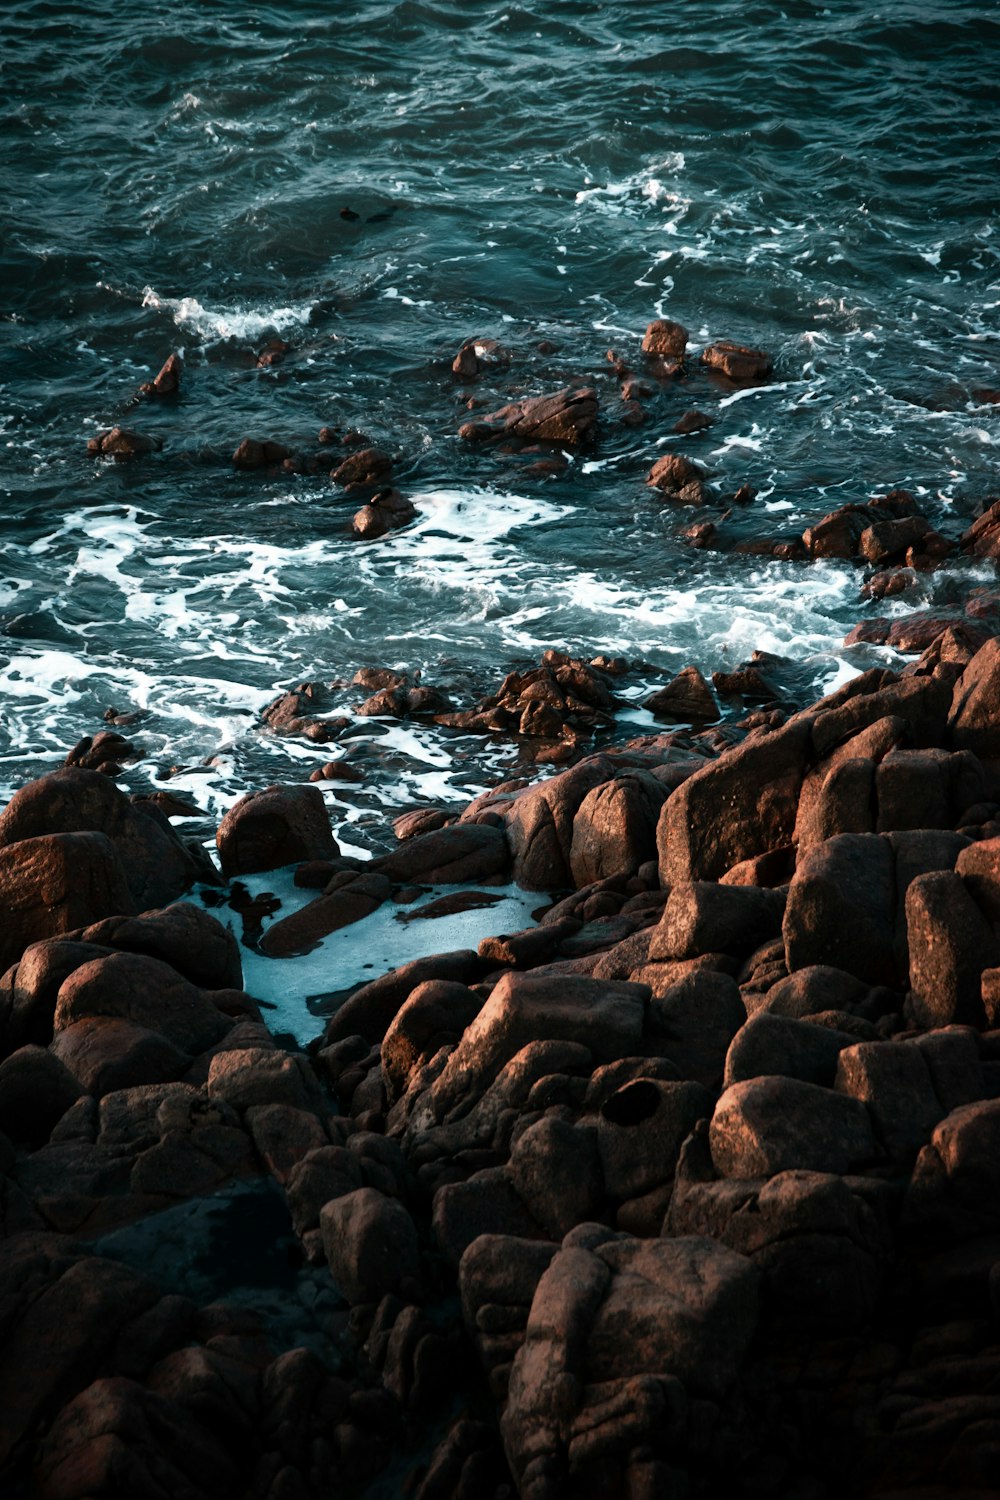 rochas marrons no corpo de água durante o dia